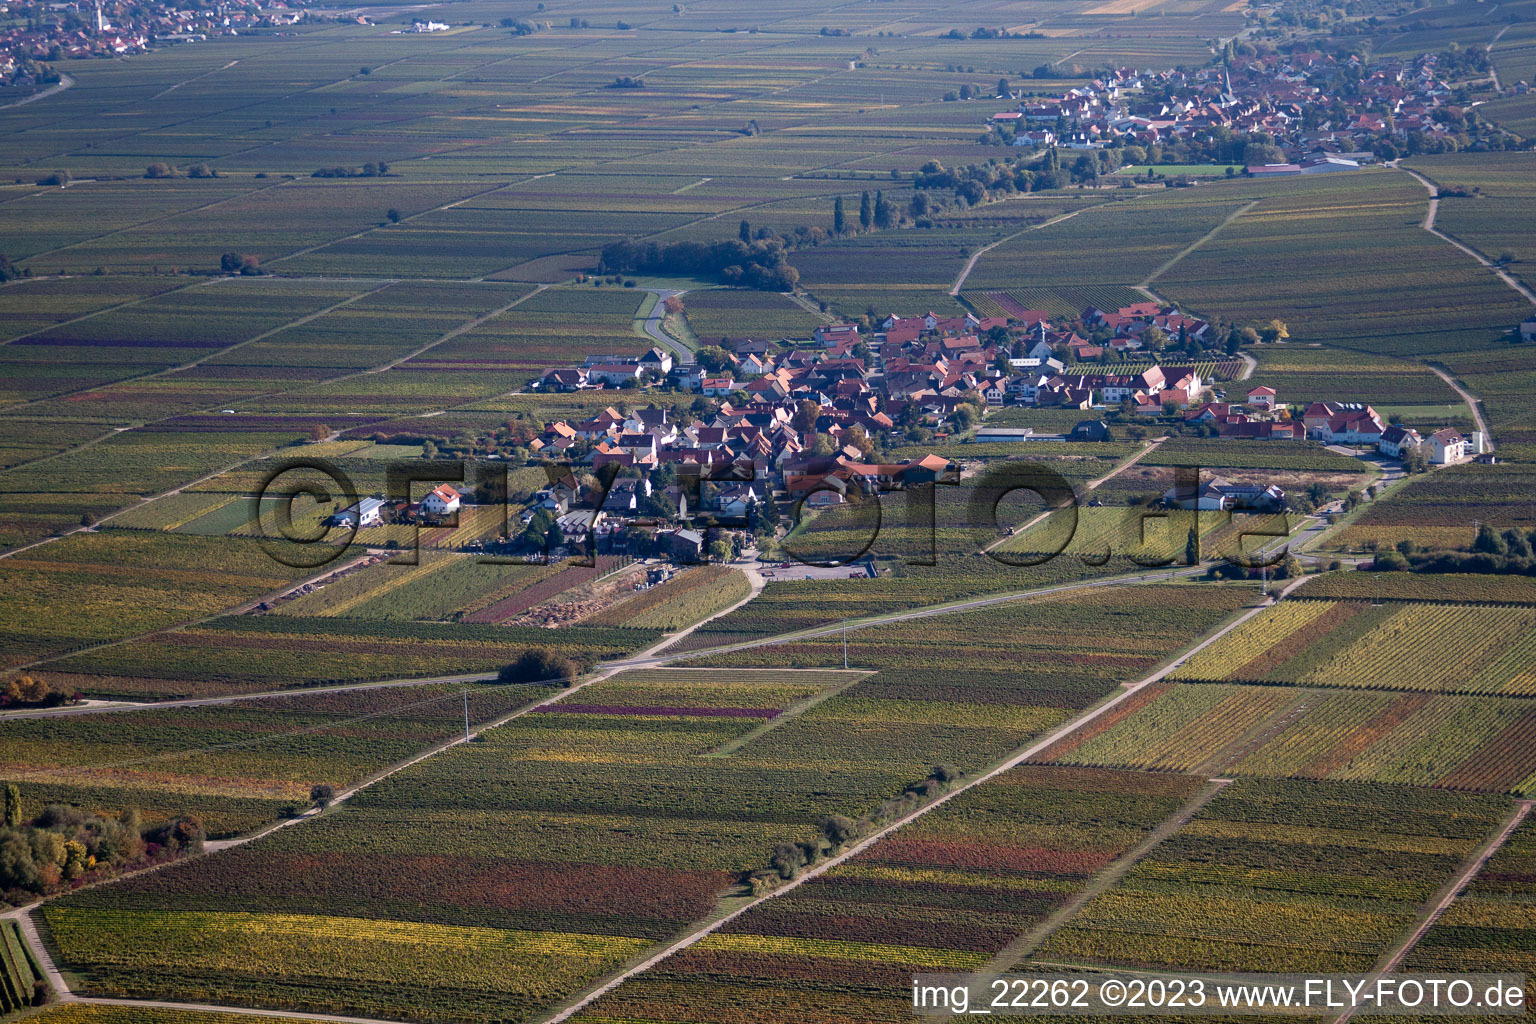 Flemlingen im Bundesland Rheinland-Pfalz, Deutschland aus der Luft betrachtet